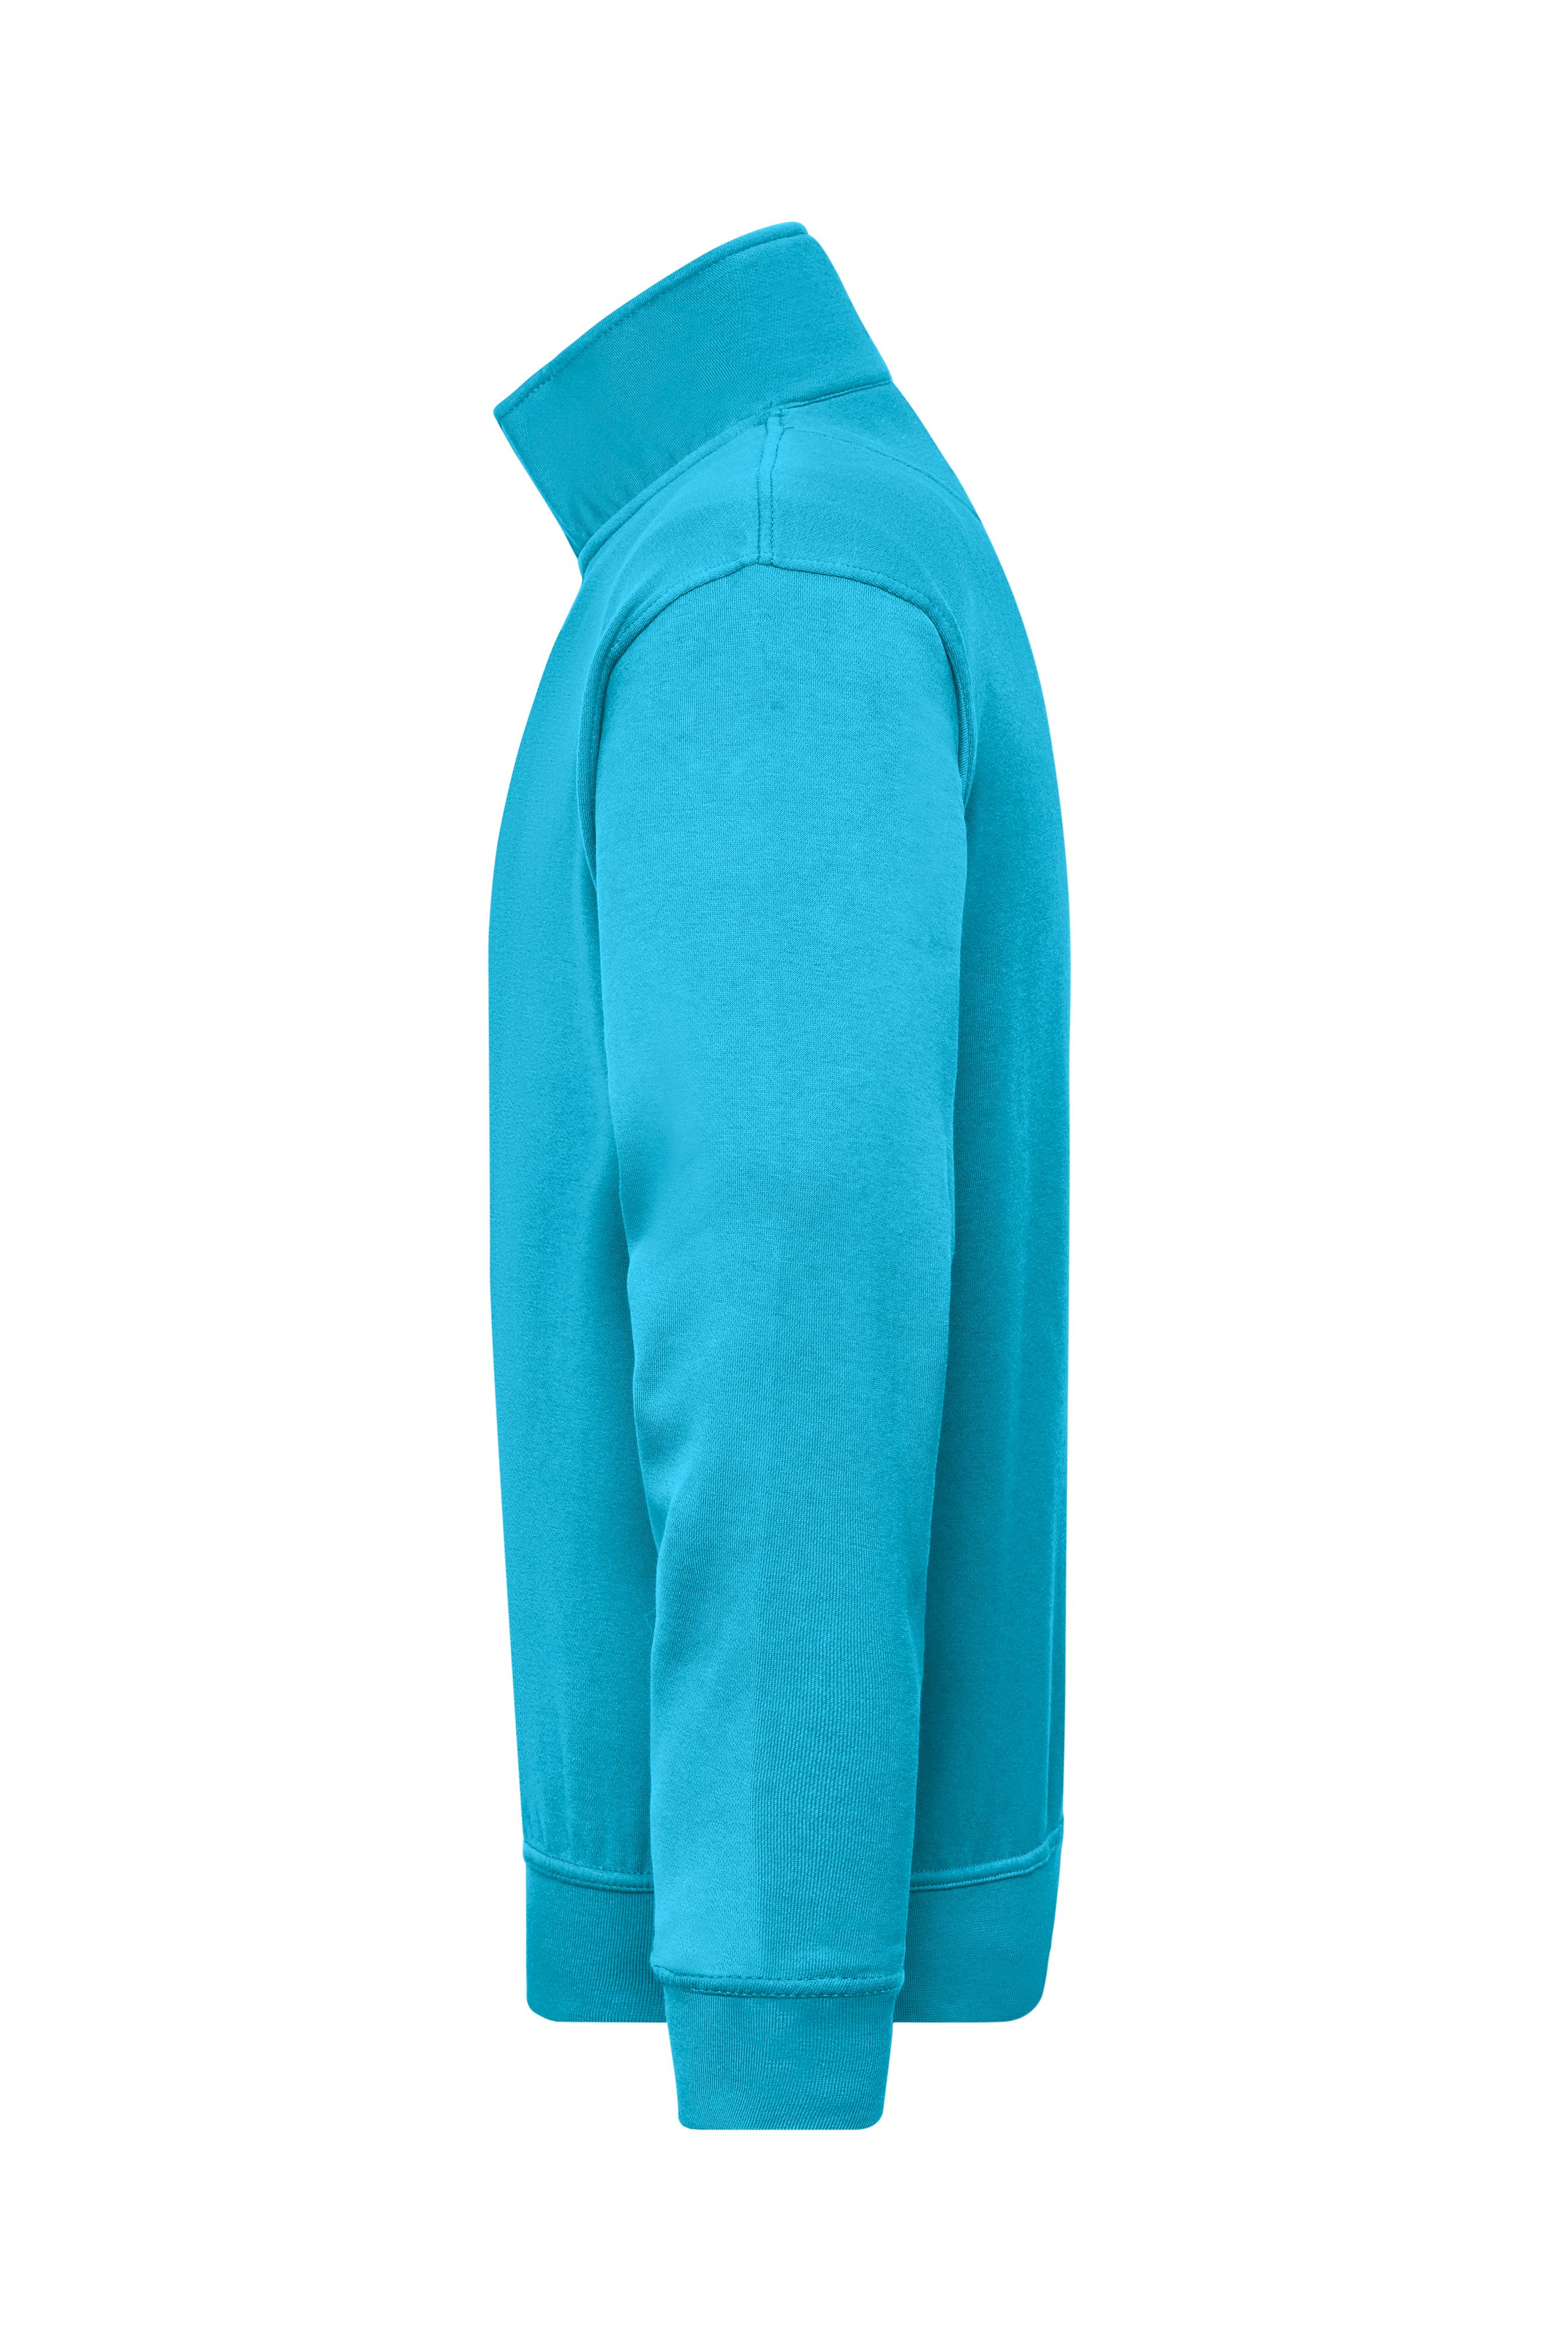 Workwear Half Zip Sweat JN831 Sweatshirt mit Stehkragen und Reißverschluss